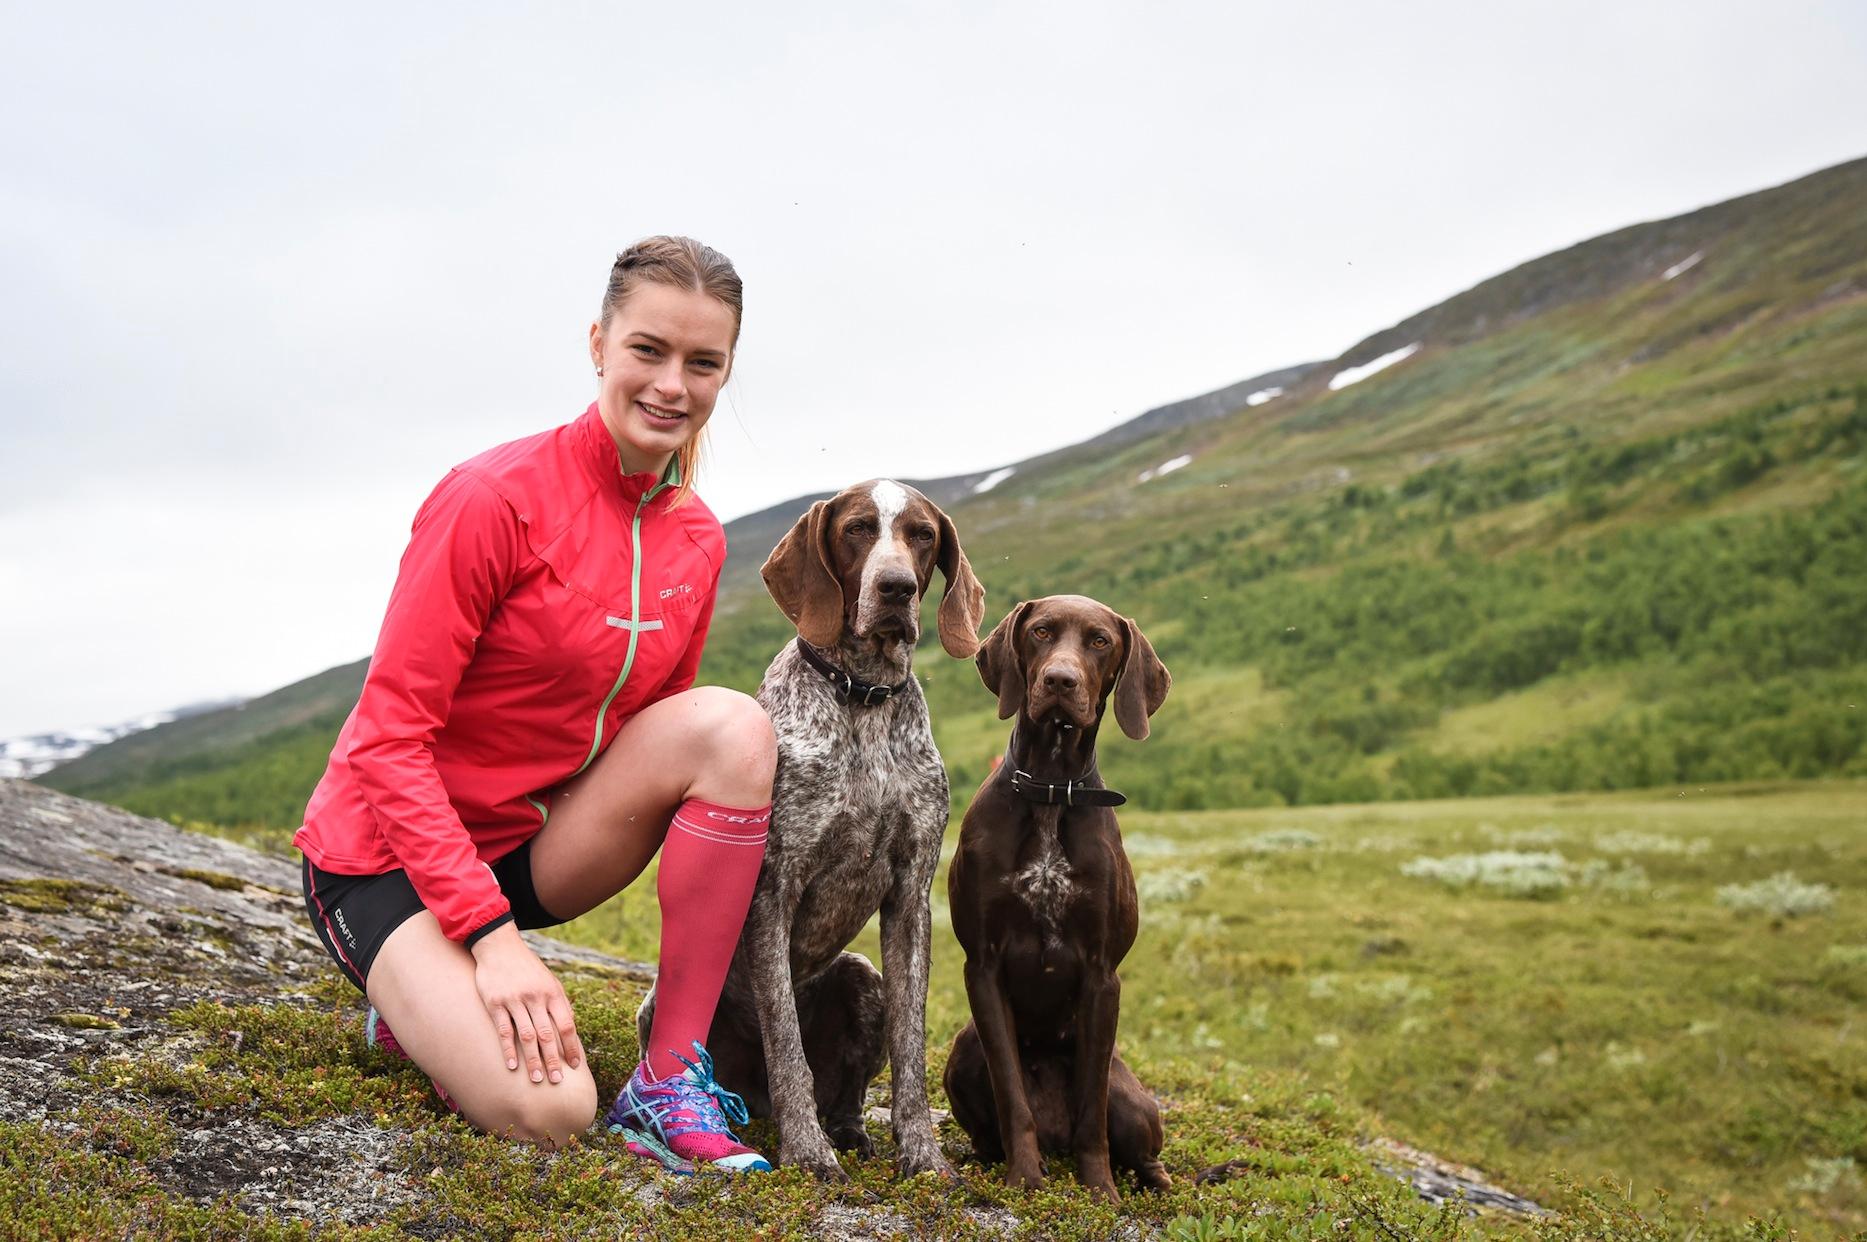 Längdåkaren Sofia Henriksson, 21, med hundarna Vinna och Ajax. Norra Storfjället reser sig mäktigt i nordväst. Här tränar Sofia för att ta sig tillbaka i tävlingsspåret. Efter en succéstart förra säsongen drabbades hon av en ätstörning.